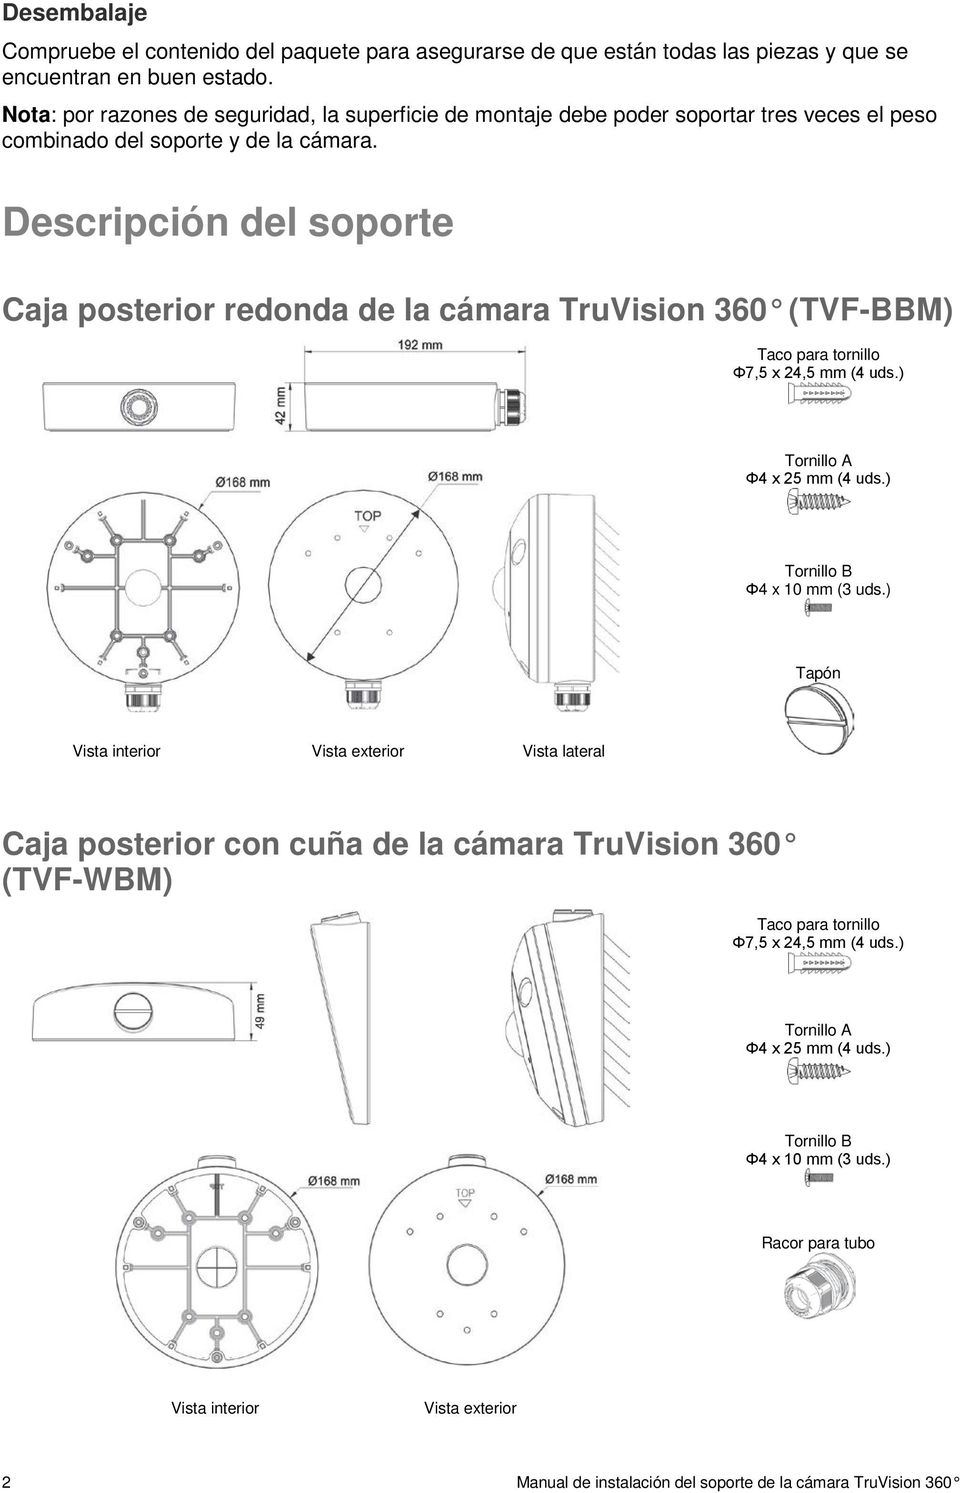 Descripción del soporte Caja posterior redonda de la cámara TruVision 360 (TVF-BBM) Taco para tornillo Φ7,5 x 24,5 mm (4 uds.) Tornillo A Φ4 x 25 mm (4 uds.) Tornillo B Φ4 x 10 mm (3 uds.